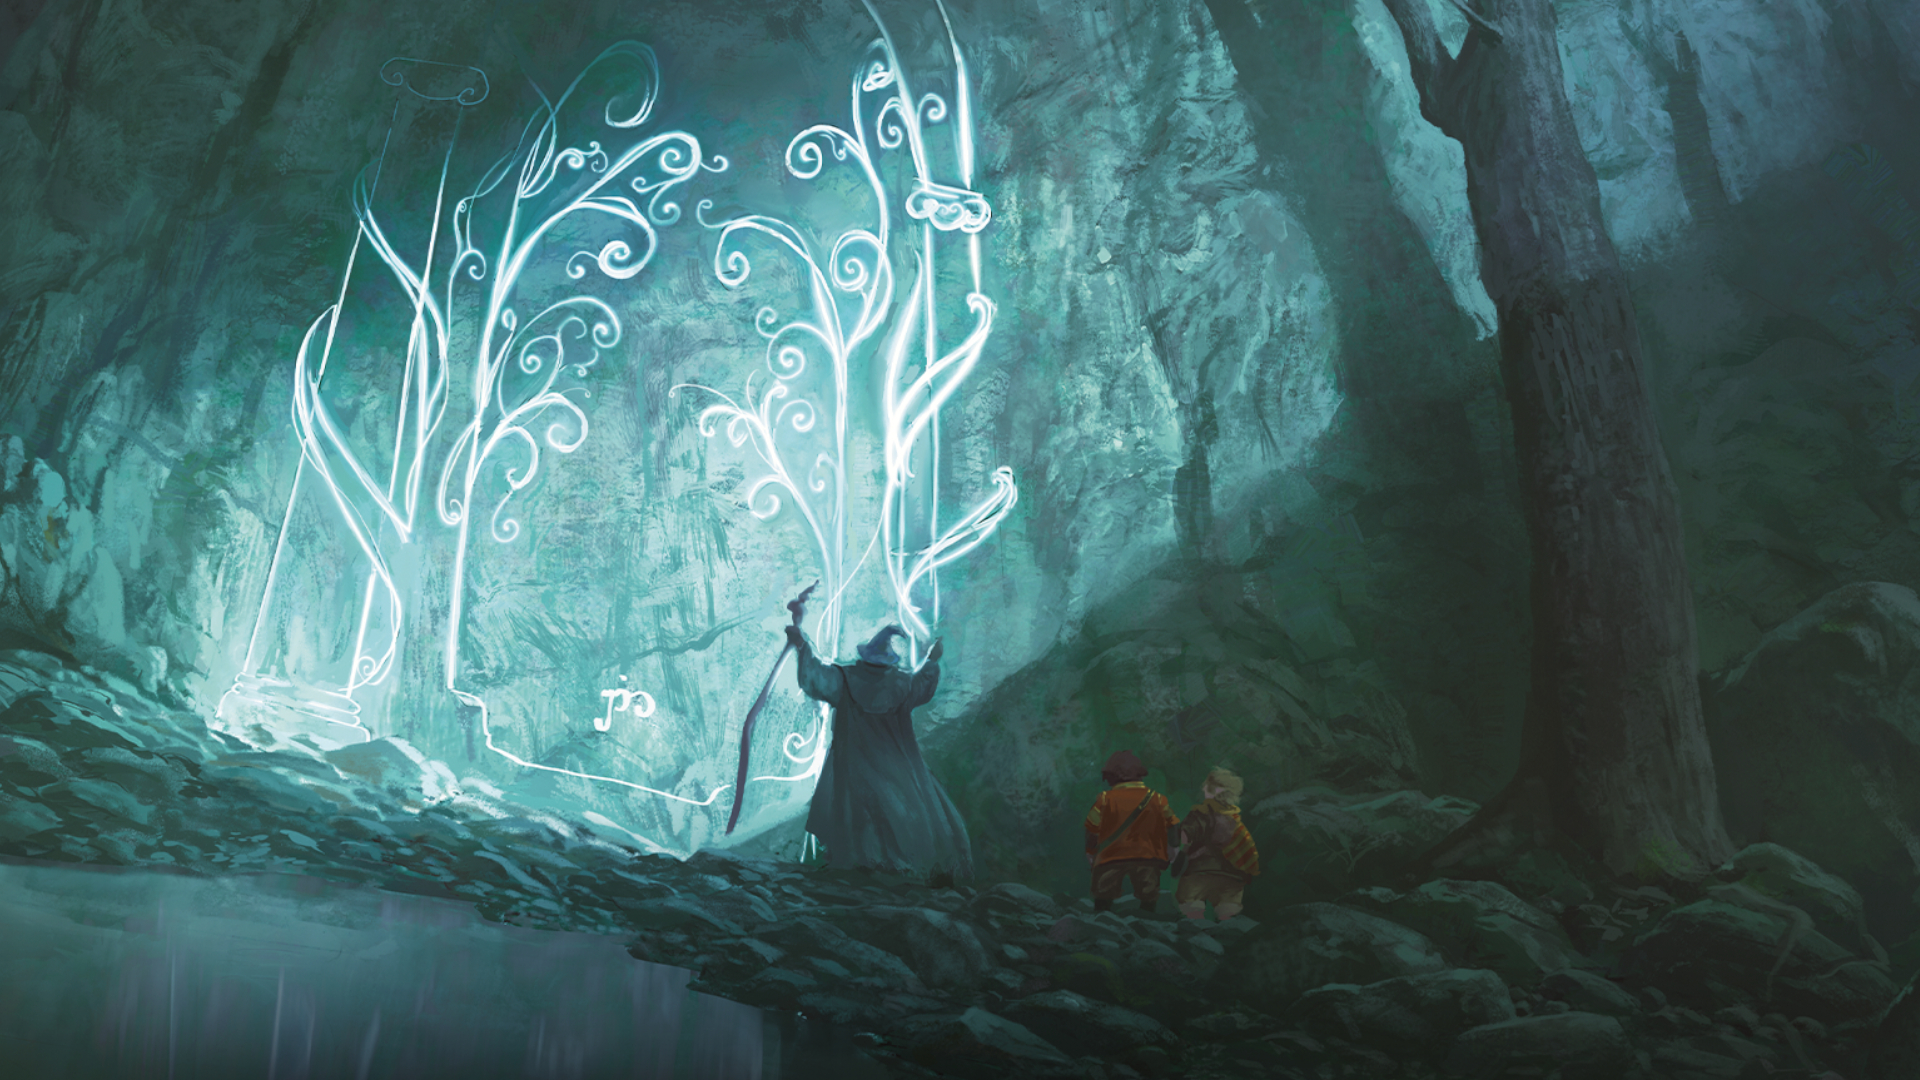 La porte de la Moria dans le jeu MTG Le Seigneur des Anneaux, avec Gandalf, Frodon et Sam devant elle.